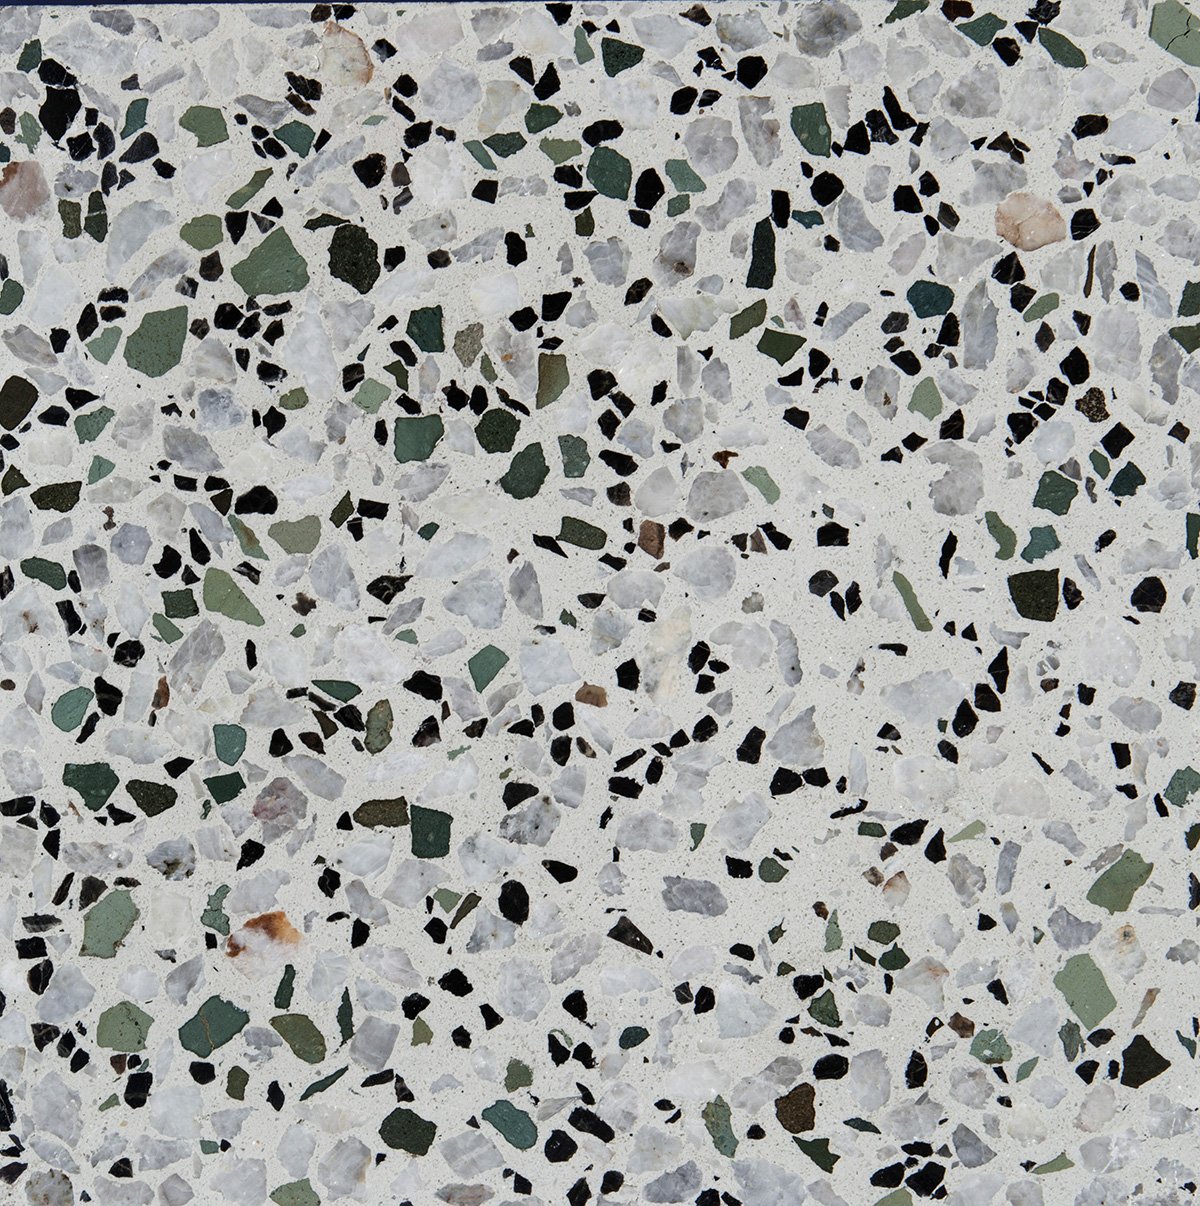 سنگ درشت الوان با زمینه سفید